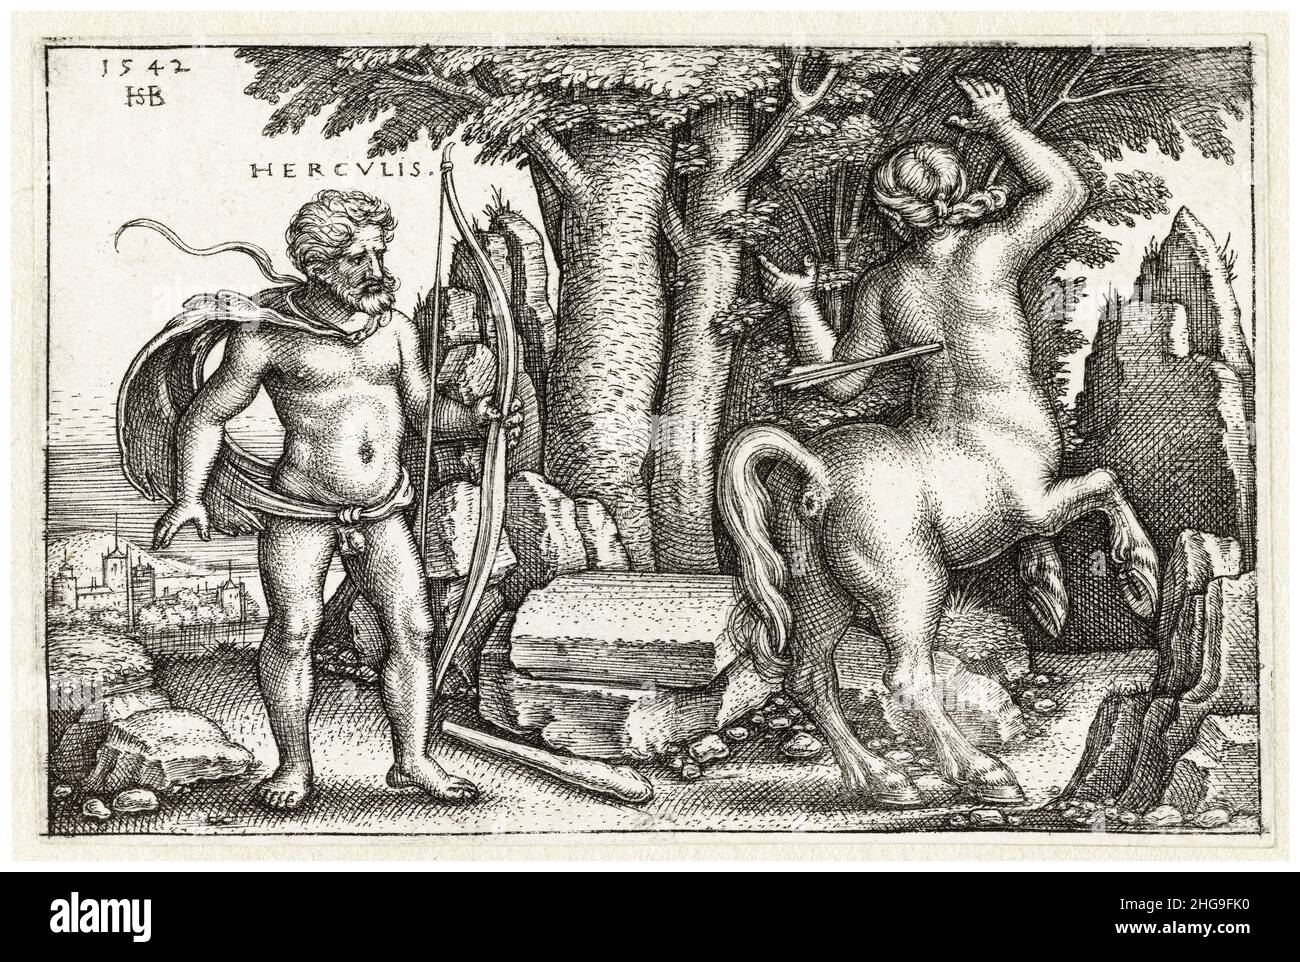 Hercules uccide Nessus il Centauro, incisione di Sebald Beham, 1542 Foto Stock